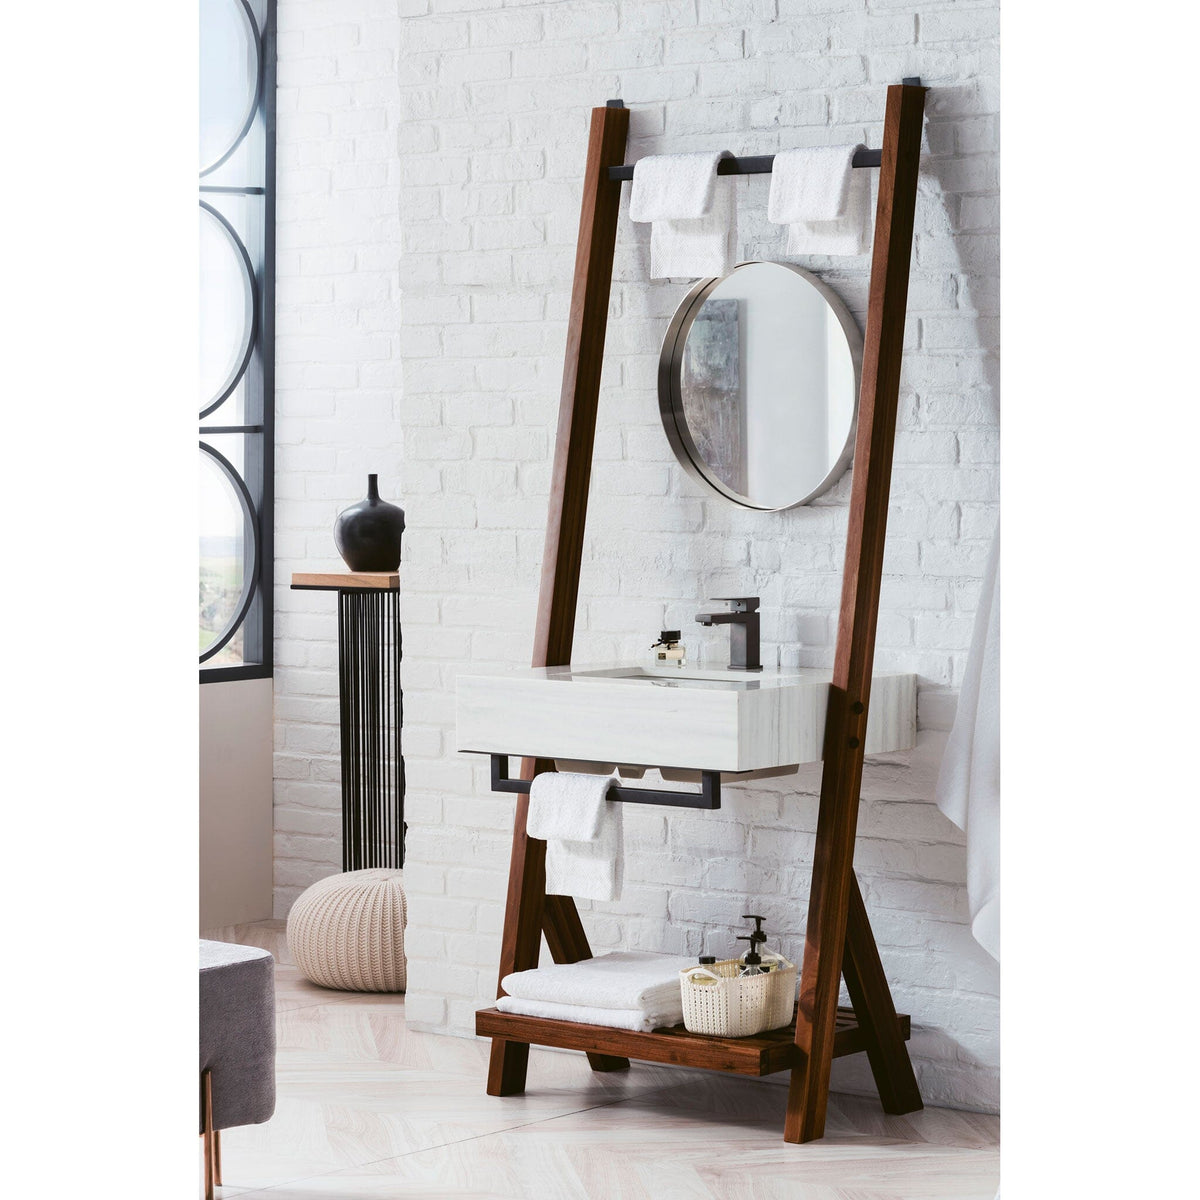 30" Lakeside Single Bathroom Vanity, Mid-Century Walnut